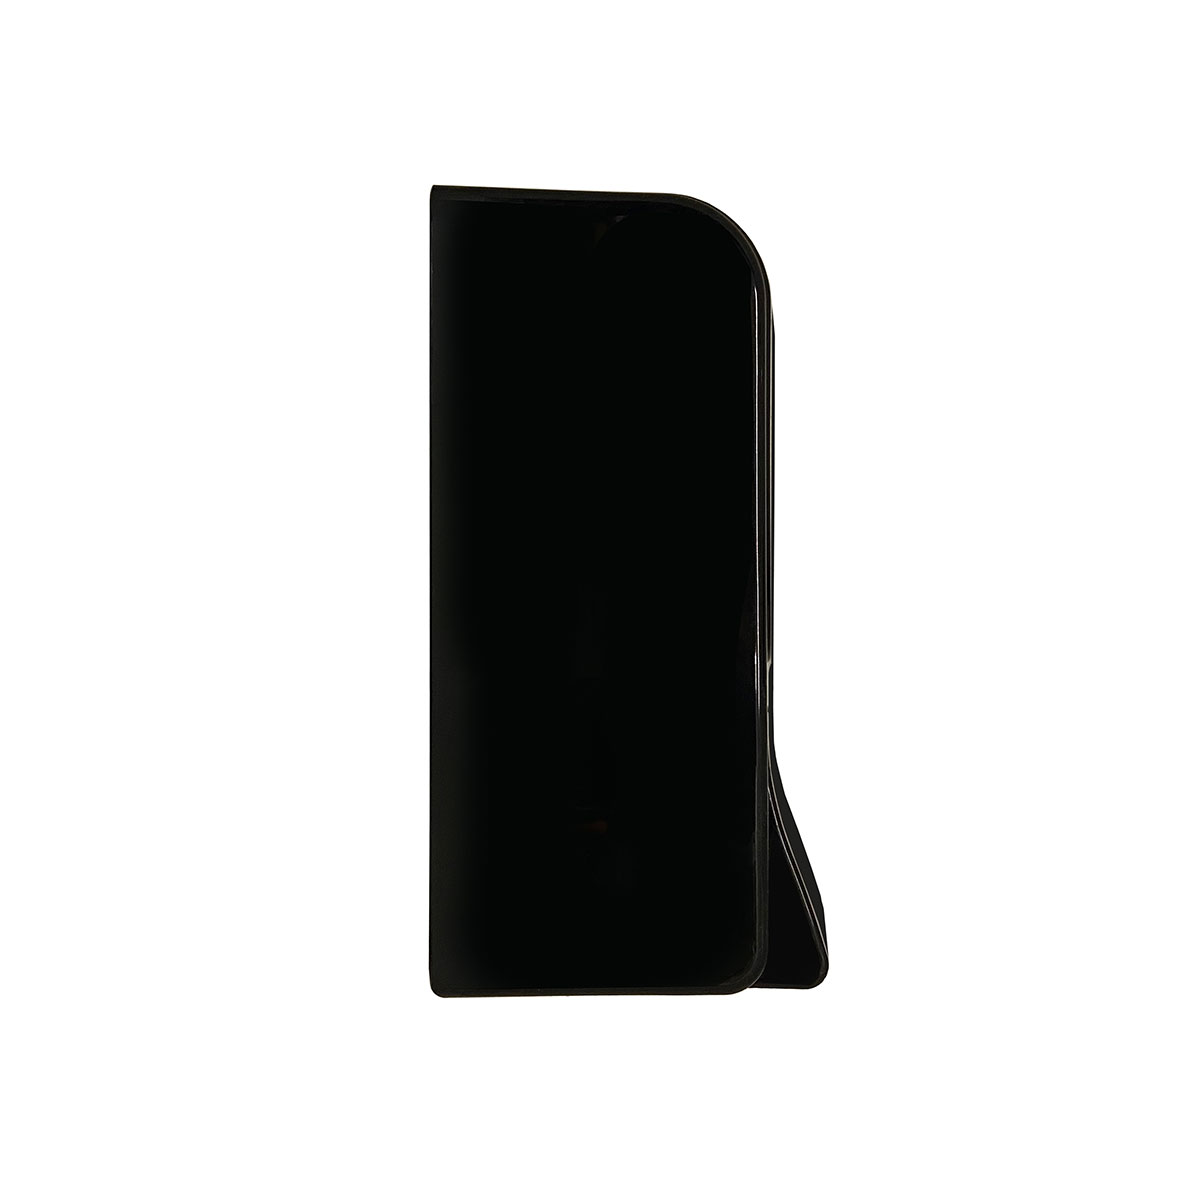 Дозатор для пены X7 нажимной 0,7 л БИЗНЕС, корпус черный, стекла прозрачные черные, кнопка черная фото 3